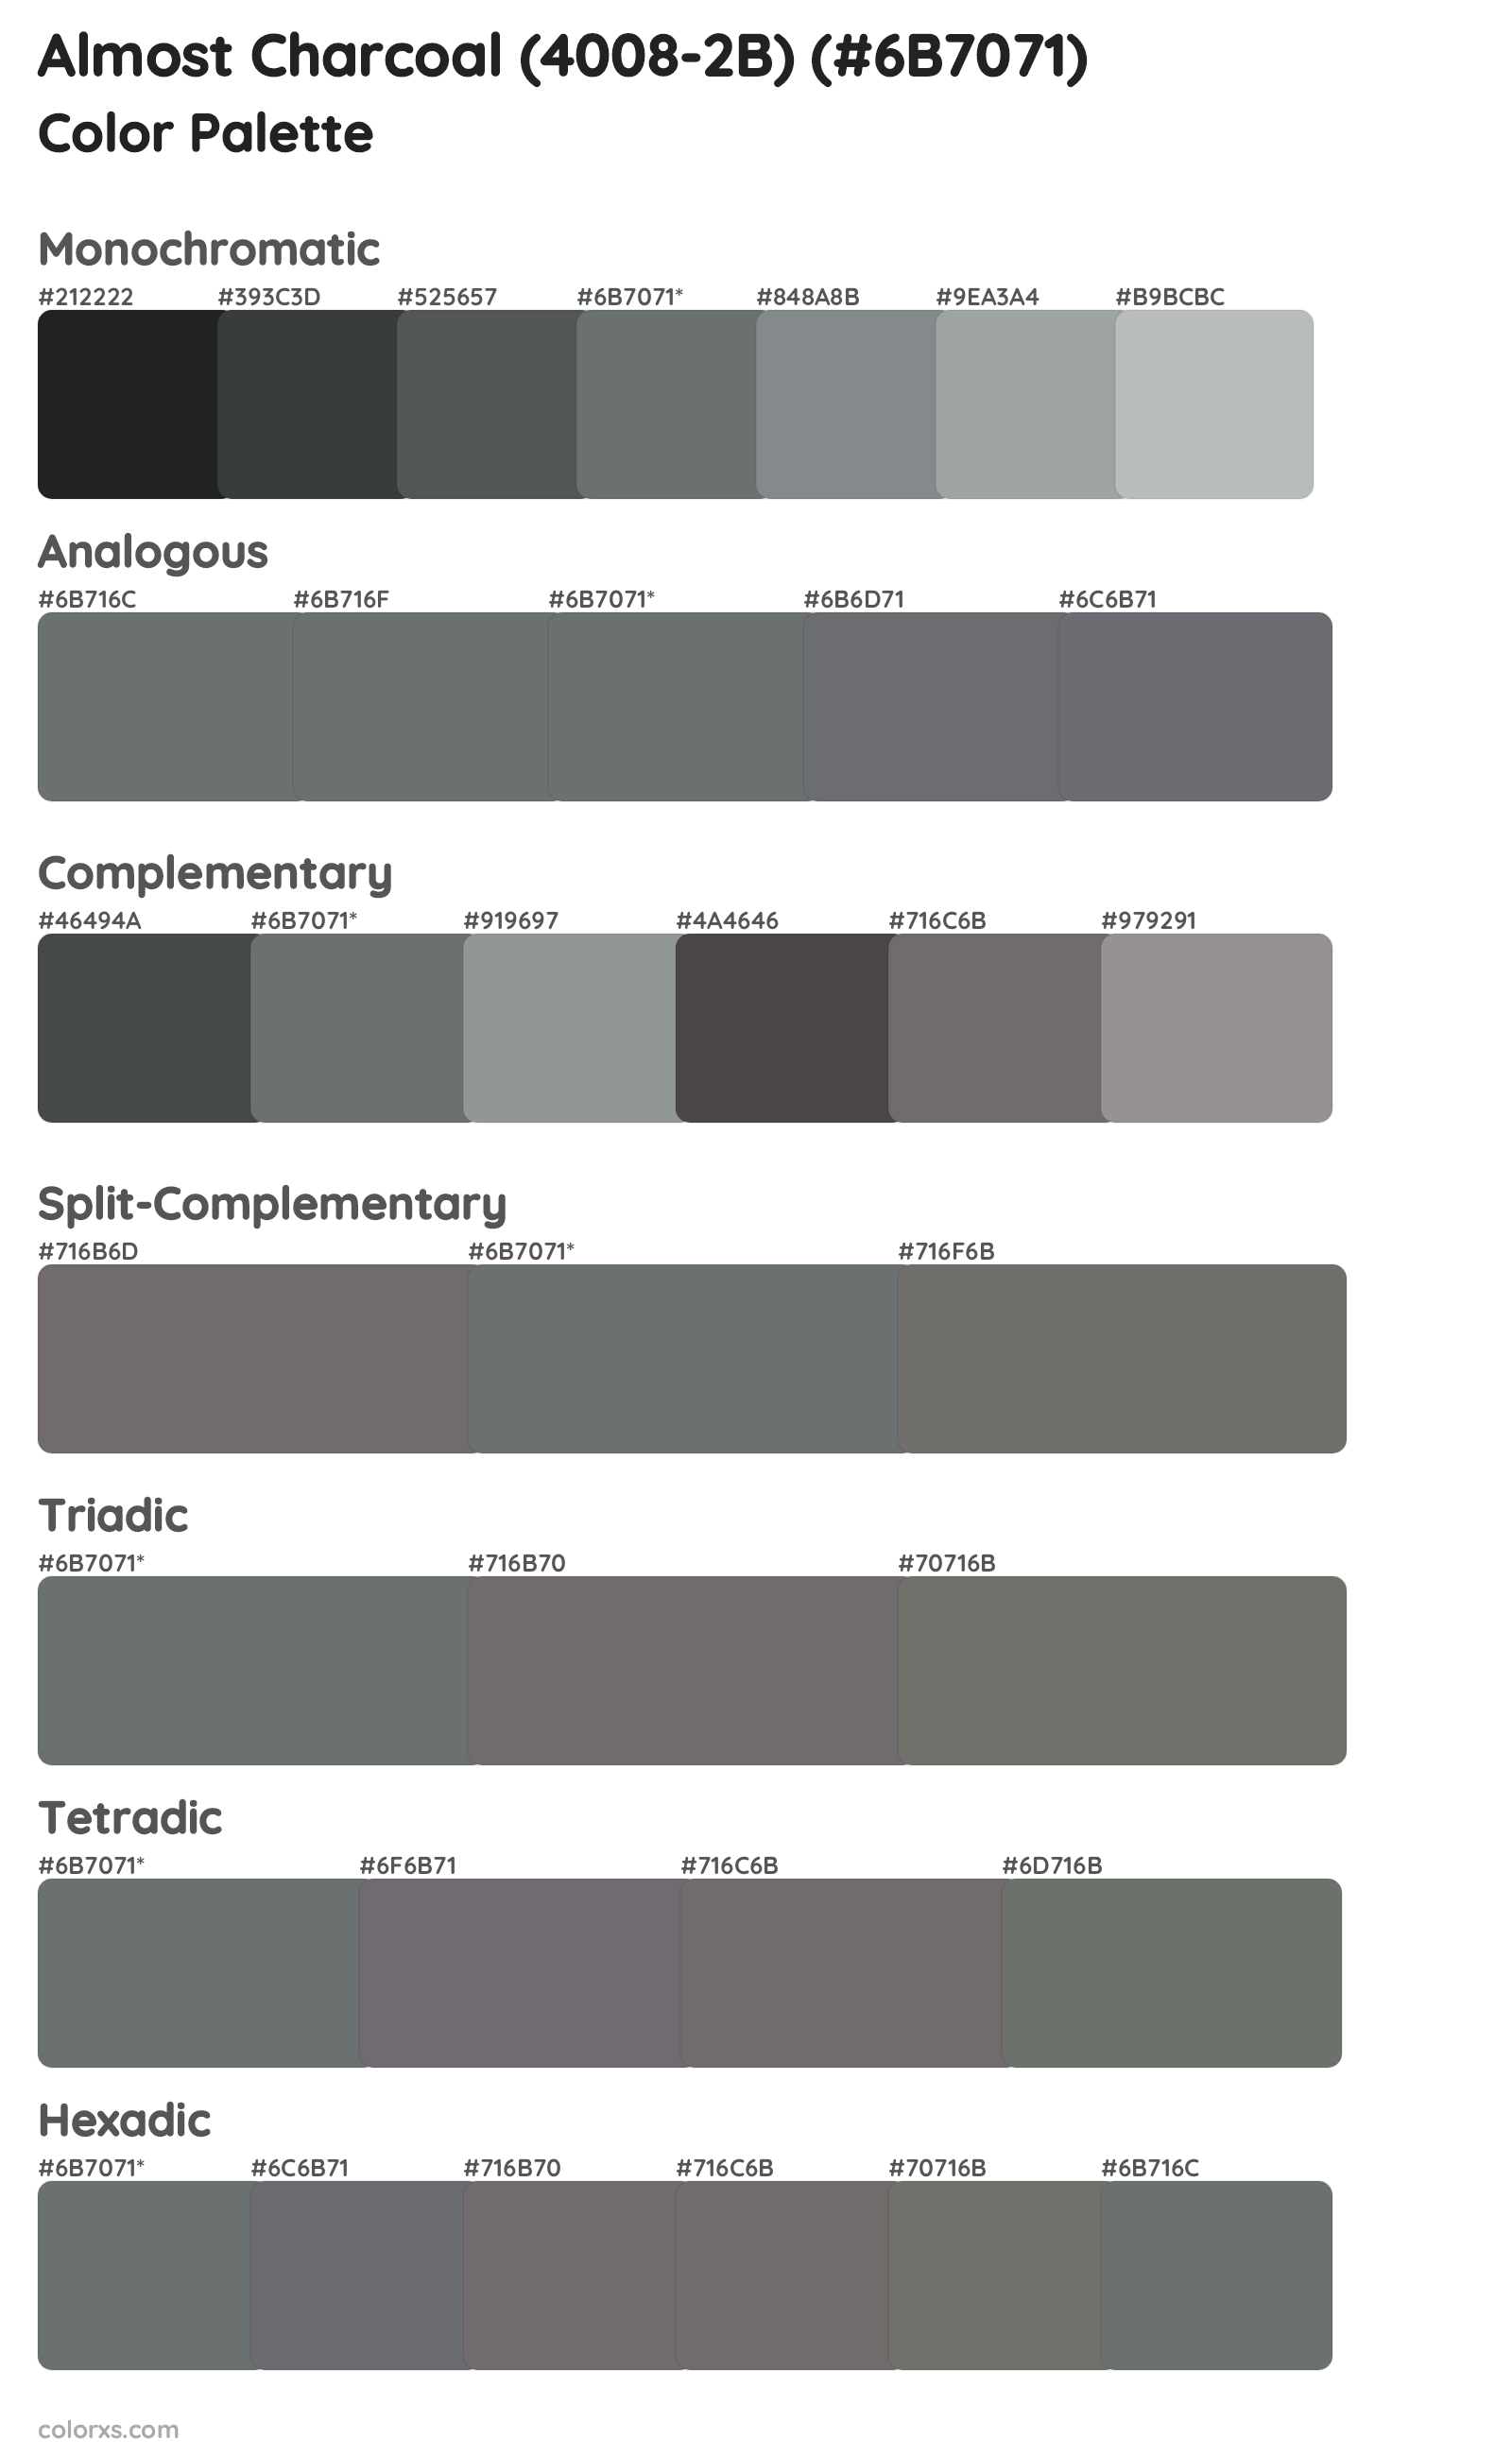 Almost Charcoal (4008-2B) Color Scheme Palettes